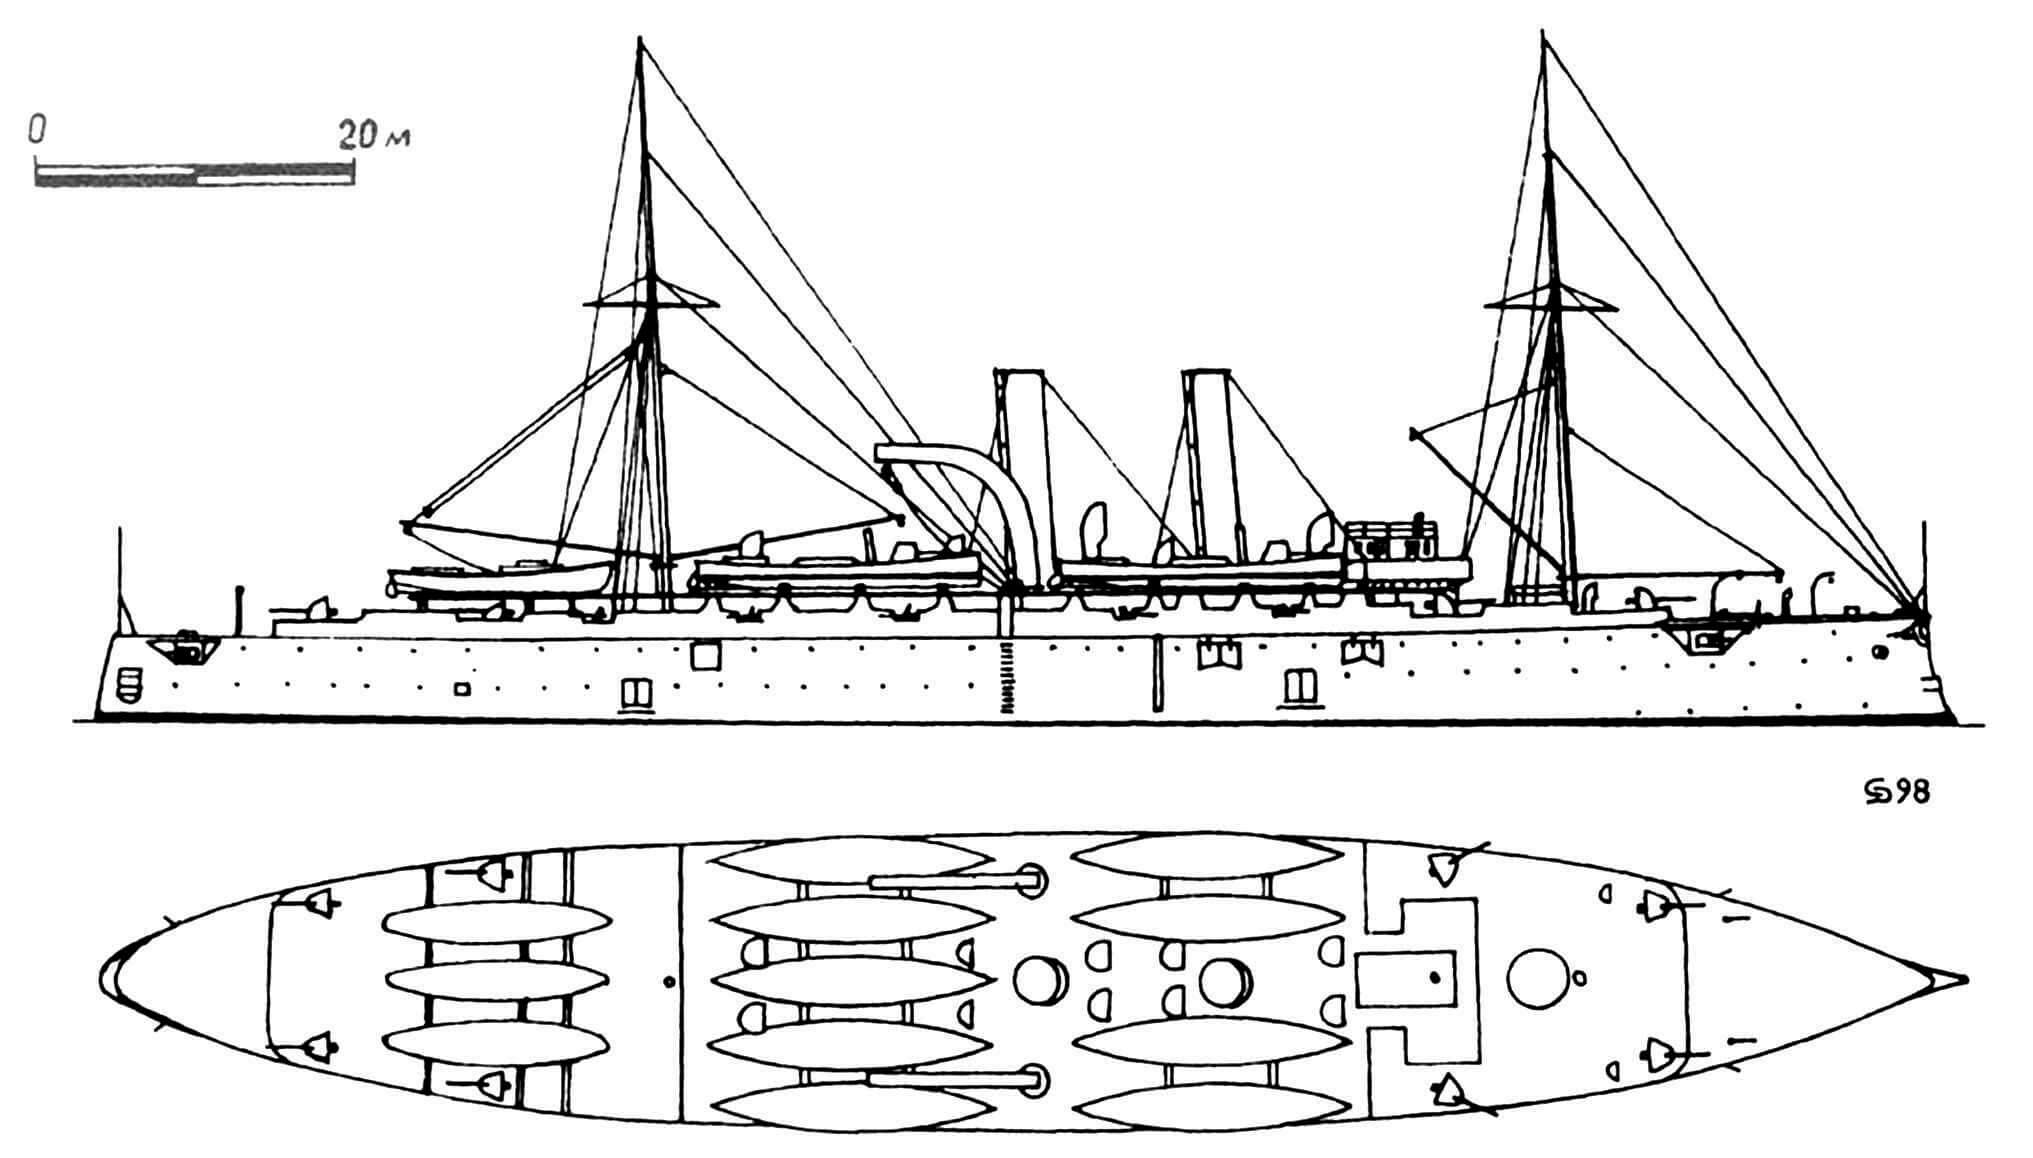 111. Крейсер-носитель миноносцев «Вулкан», Англия, 1890 г. Заложен на верфи в Портсмуте в 1888 г., спущен на воду в 1889 г. Водоизмещение нормальное 6600 т. Длина наибольшая 117,7 м, ширина 17,68 м, осадка 6,71 м. Мощность двухвальной паросиловой установки 11 800 л.с., скорость на испытаниях 20,2 узла. Броня: палуба 63-127 мм. Вооружение: восемь 120-мм и двенадцать 37-мм орудий, шесть торпедных аппаратов, 6—9 миноносок. Построена одна единица. В 1902 г. заменены котлы. В 1915 г. разоружен и превращен в плавбазу подводных лодок, в 1931 г. — в учебный блокшив. Сдан на слом в 1955 г.